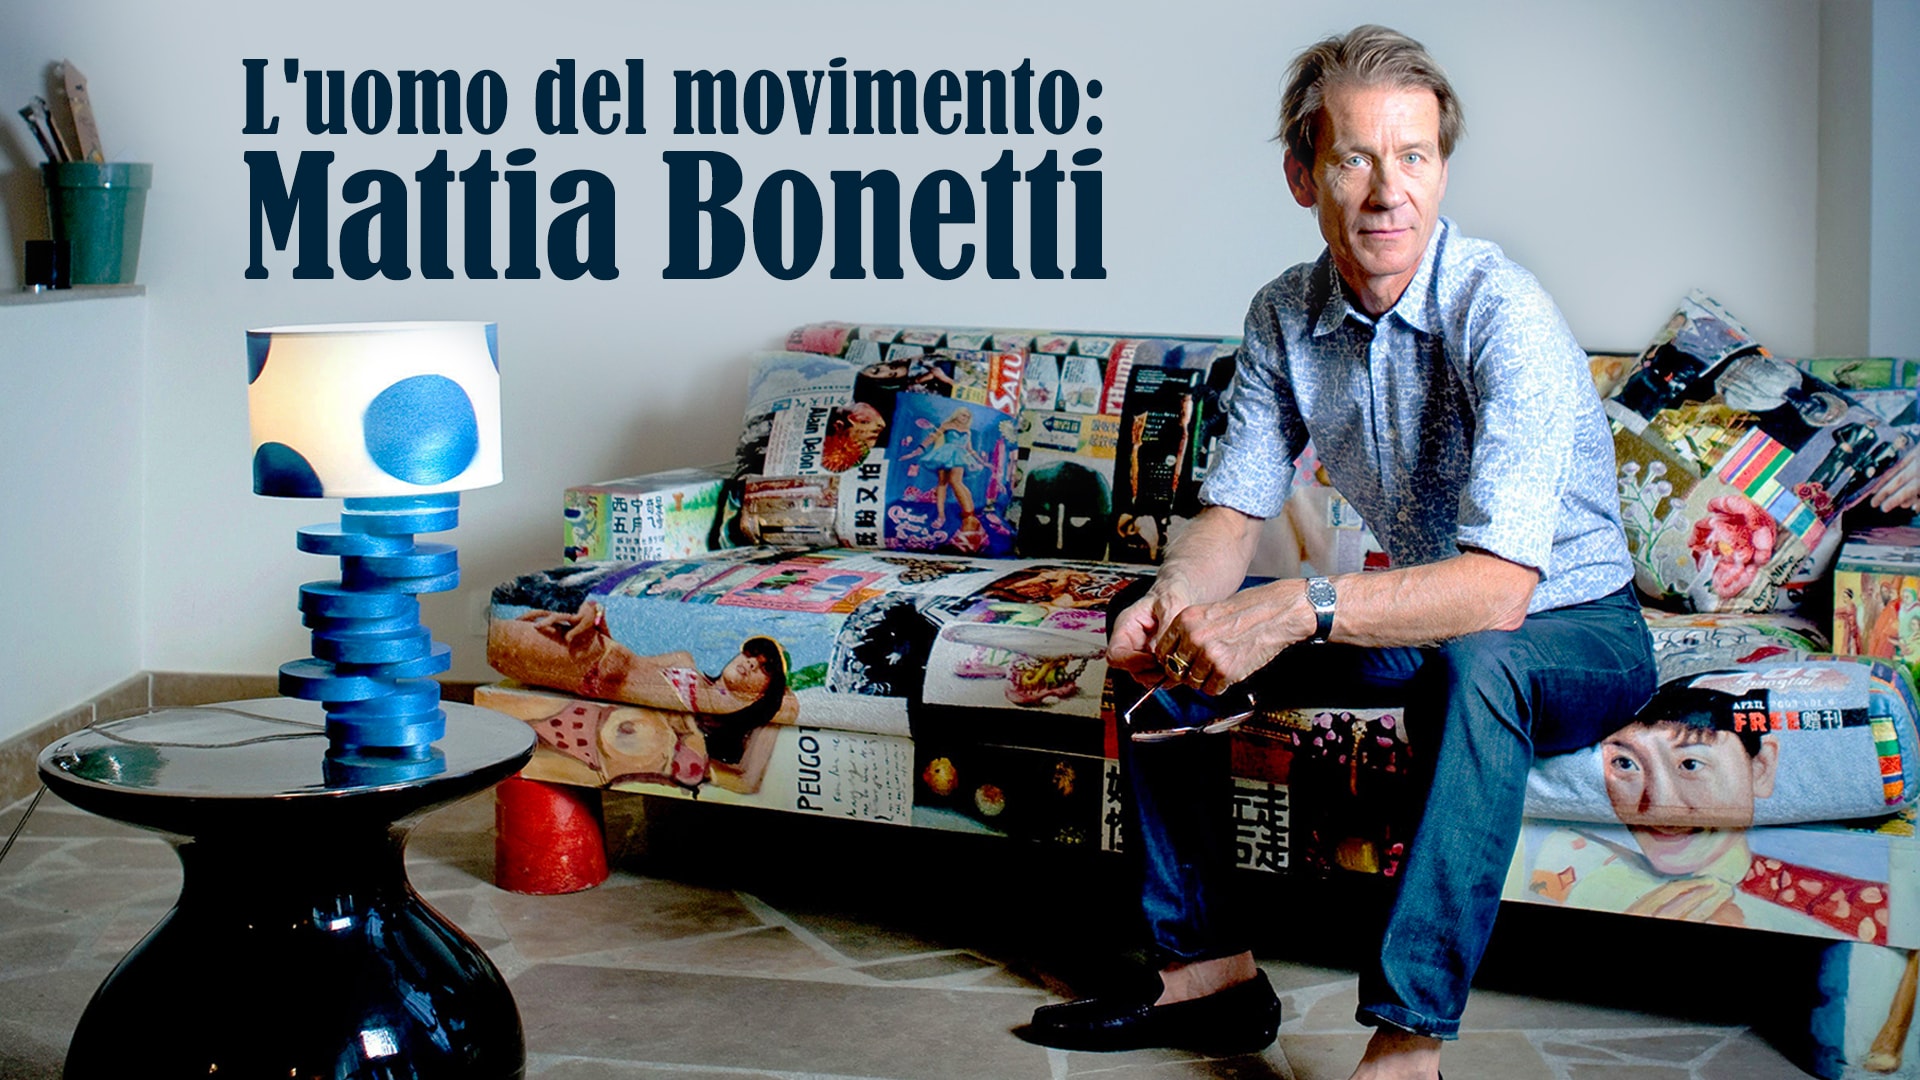 L'uomo del movimento: Mattia Bonetti